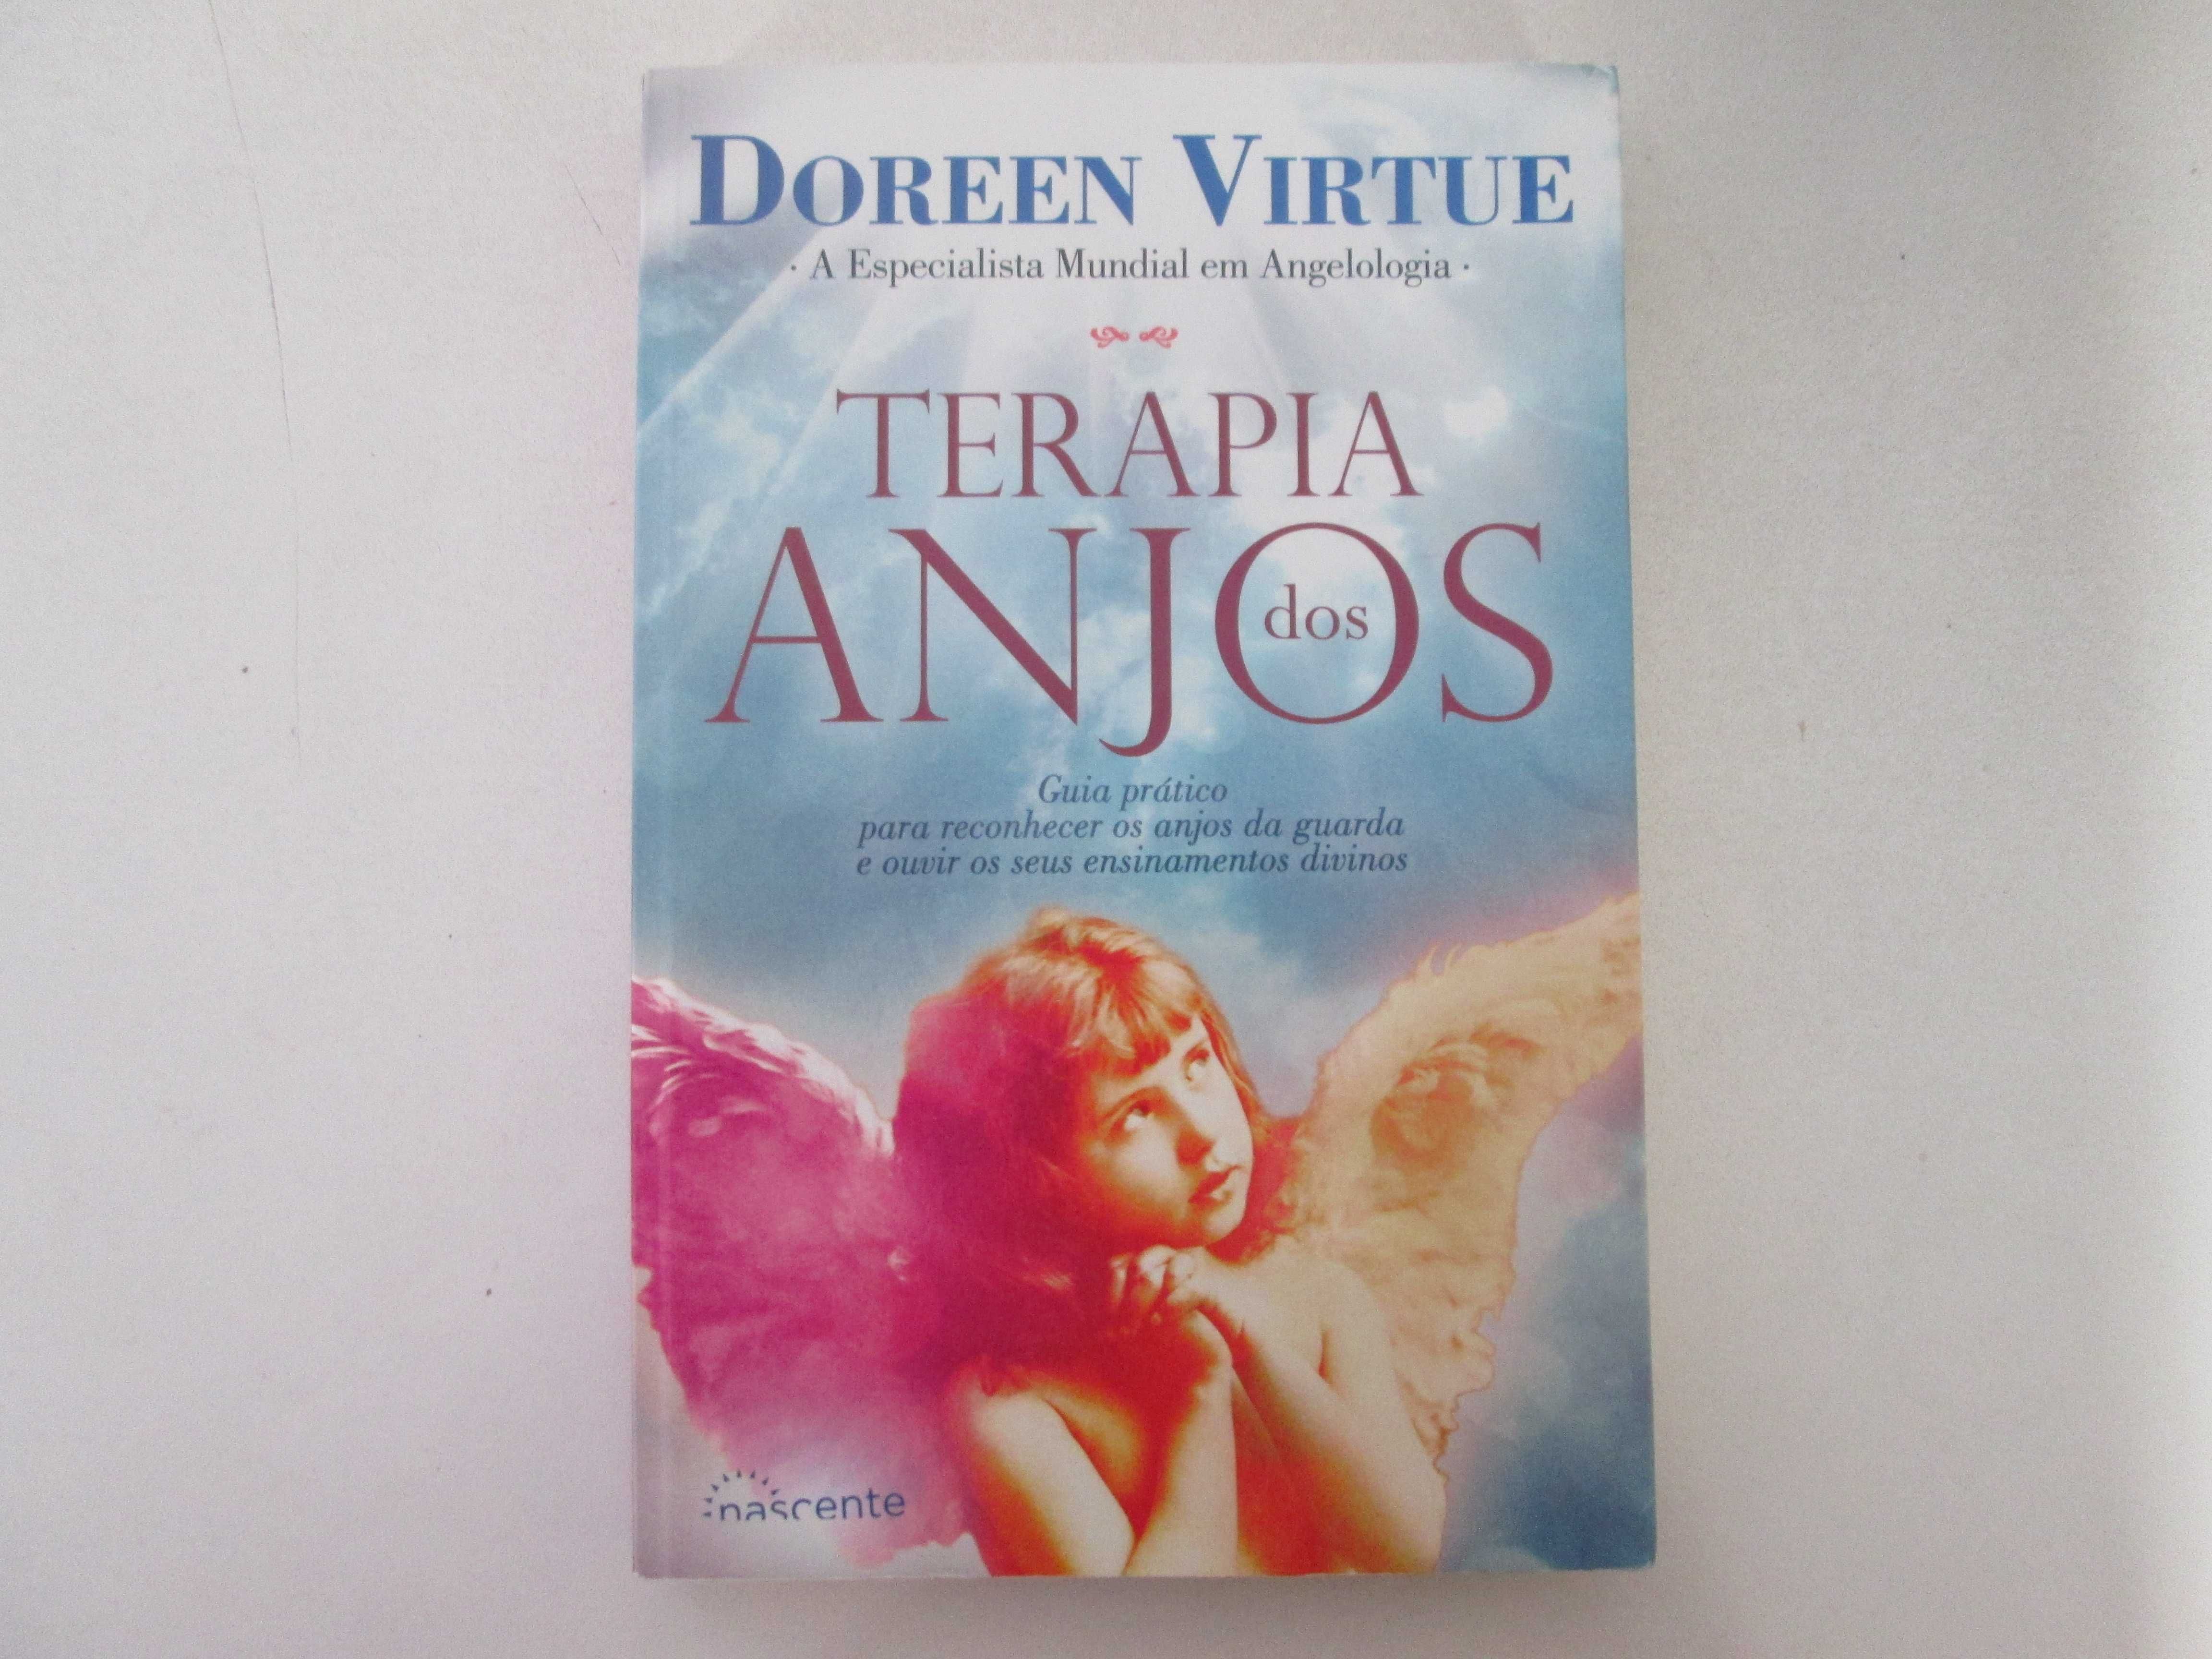 Terapia dos Anjos- Doreen Virtue